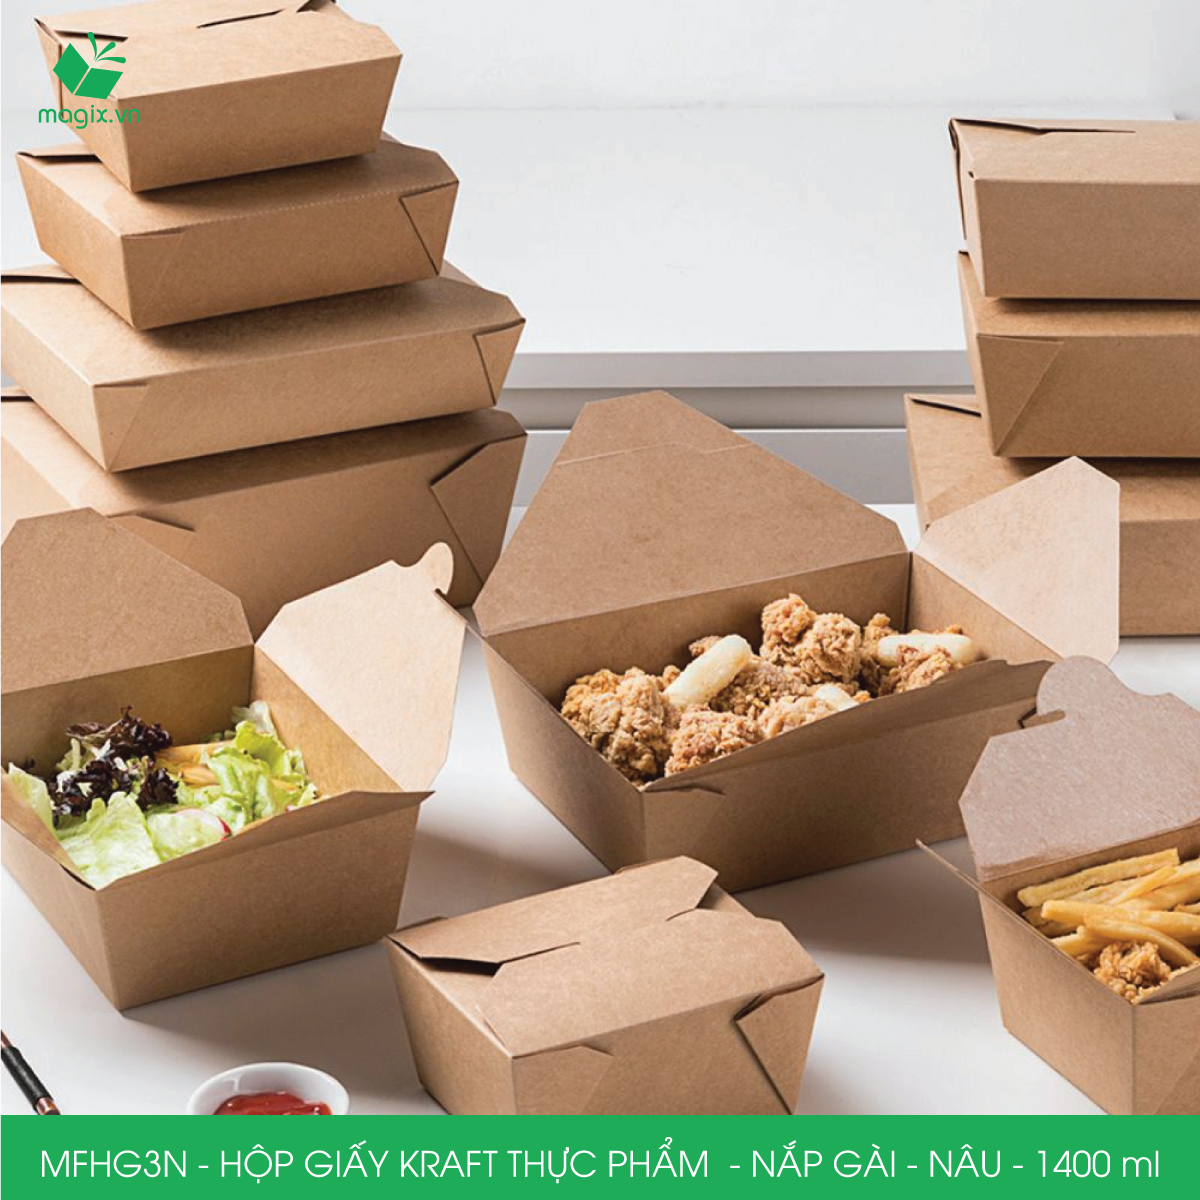 MFHG3N - 50 hộp giấy kraft thực phẩm 1400ml, hộp giấy nắp gập màu nâu đựng thức ăn, hộp giấy nắp gài gói đồ ăn mang đi 